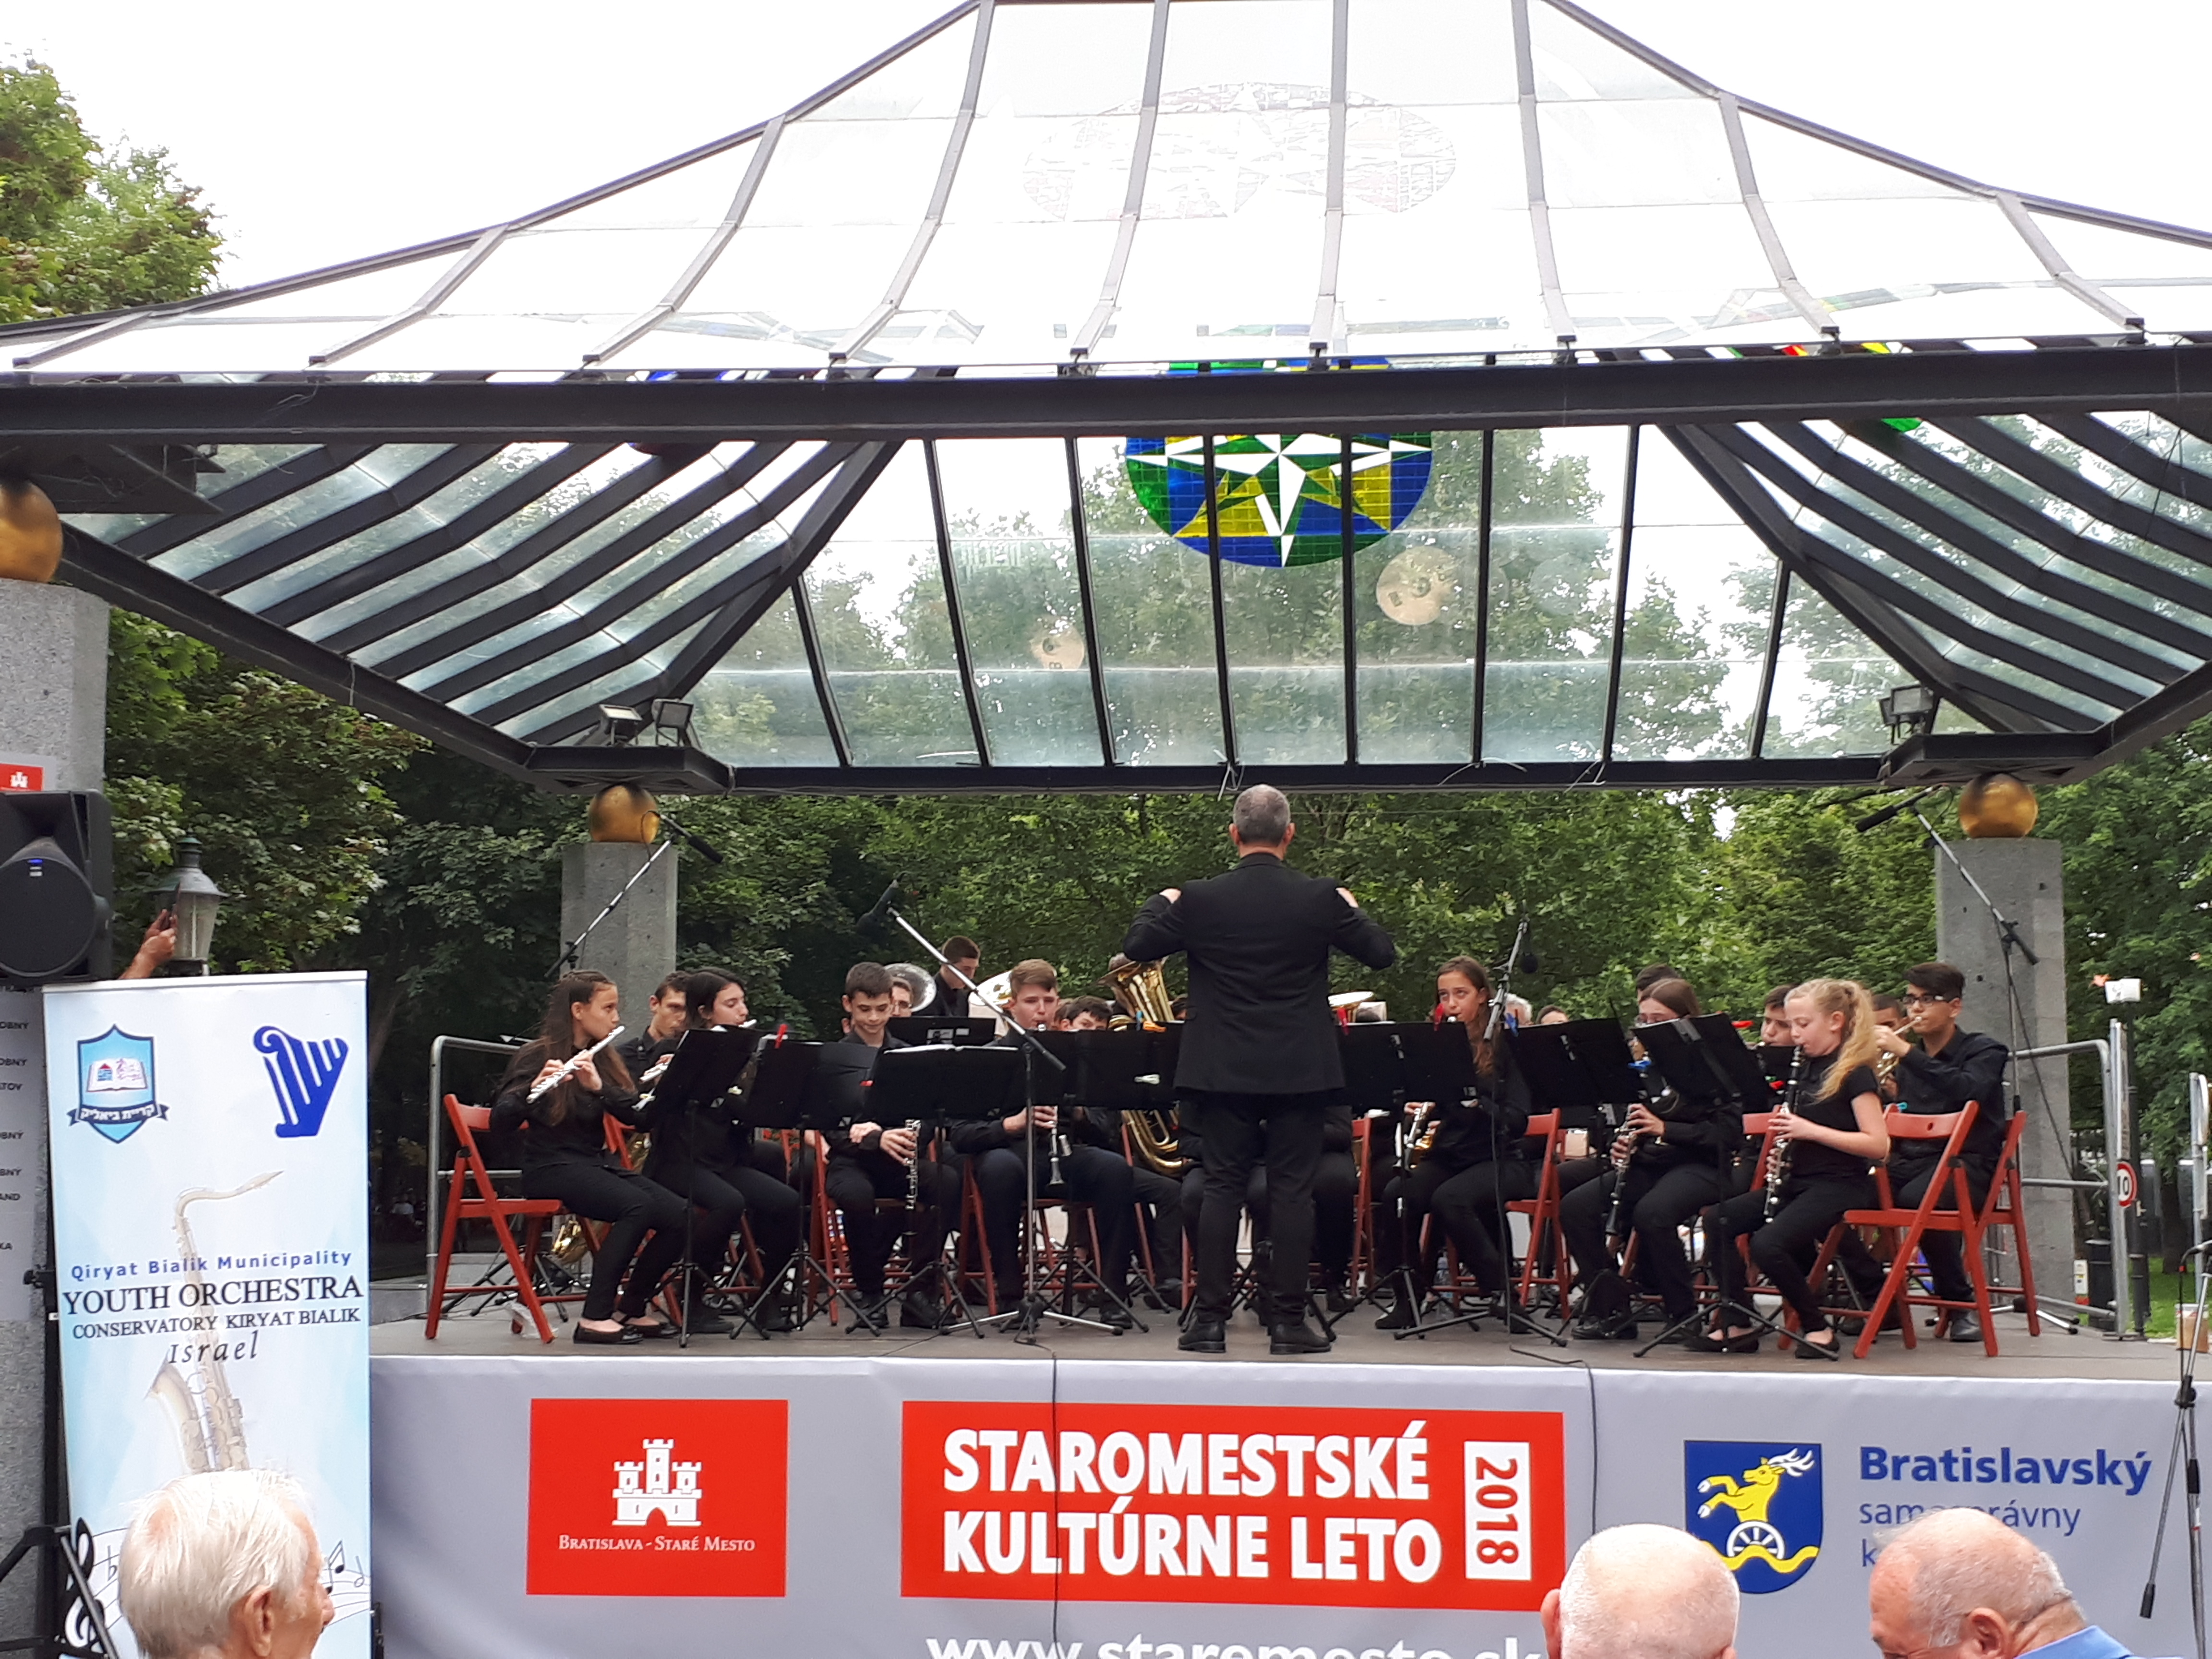 תזמורת הנוער של קונסרבטוריון קריית ביאליק יצגה את ישראל בפסטיבל בינלאומי בשלדמינג, אוסטריה